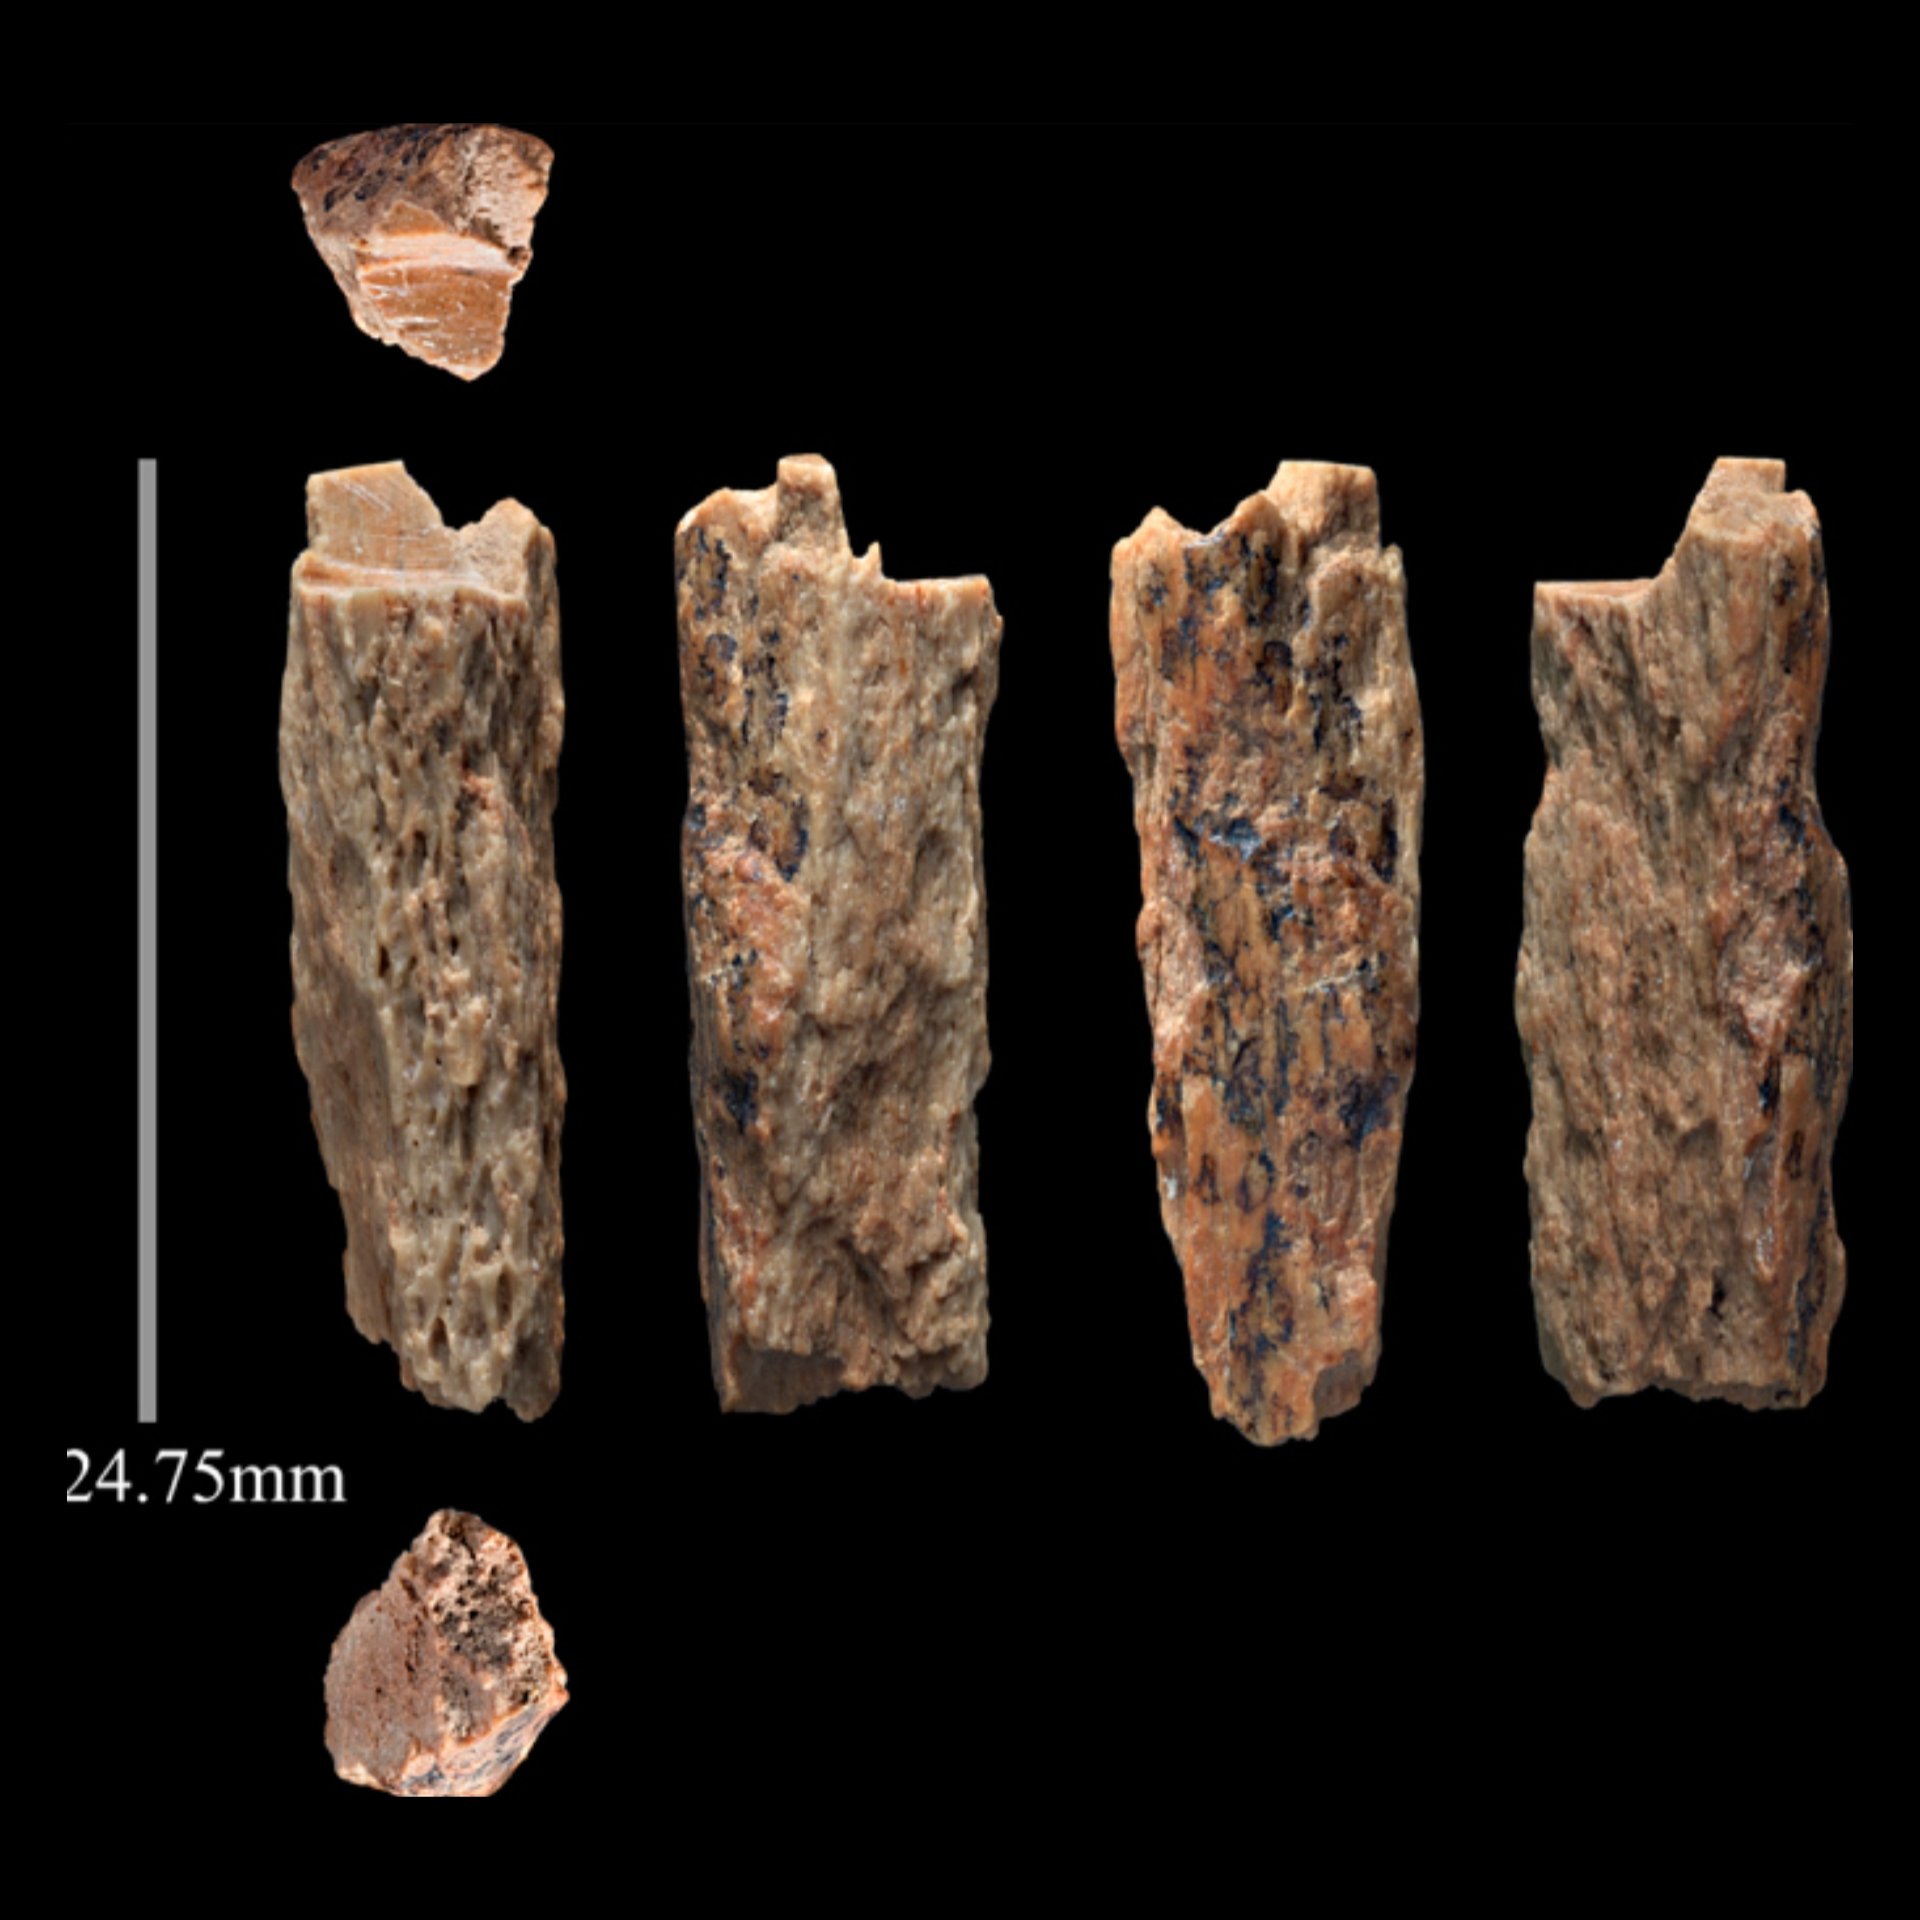 Денні, таємнича дитина 90,000 1 років тому, батьки якої були двома різними видами людей XNUMX